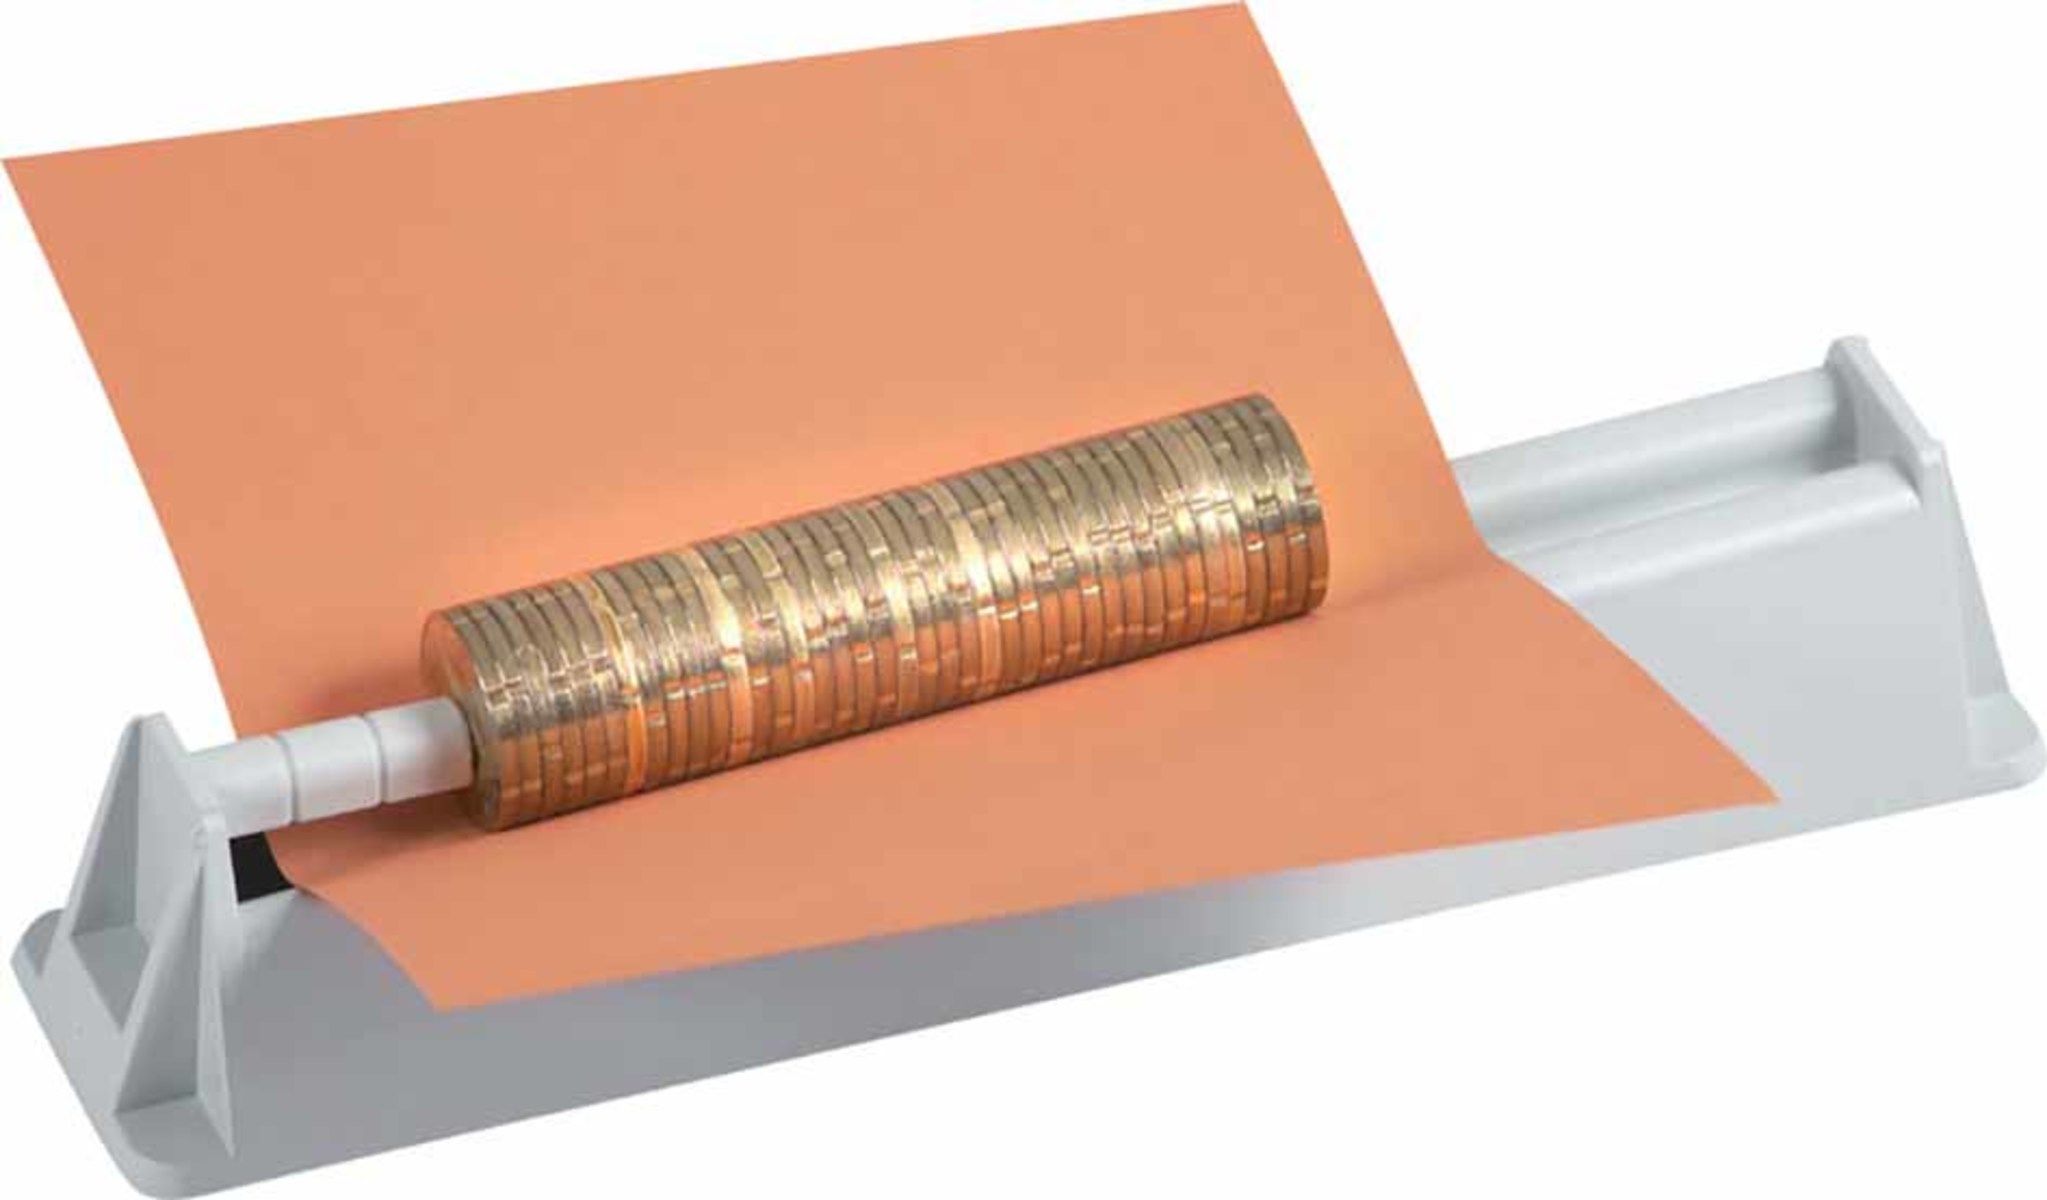 Rieffel Switzerland Appareil à rouleaux de monnaie, gris, plastique, 1  pièces, 20 cm, 3.5 cm, 4.5 cm